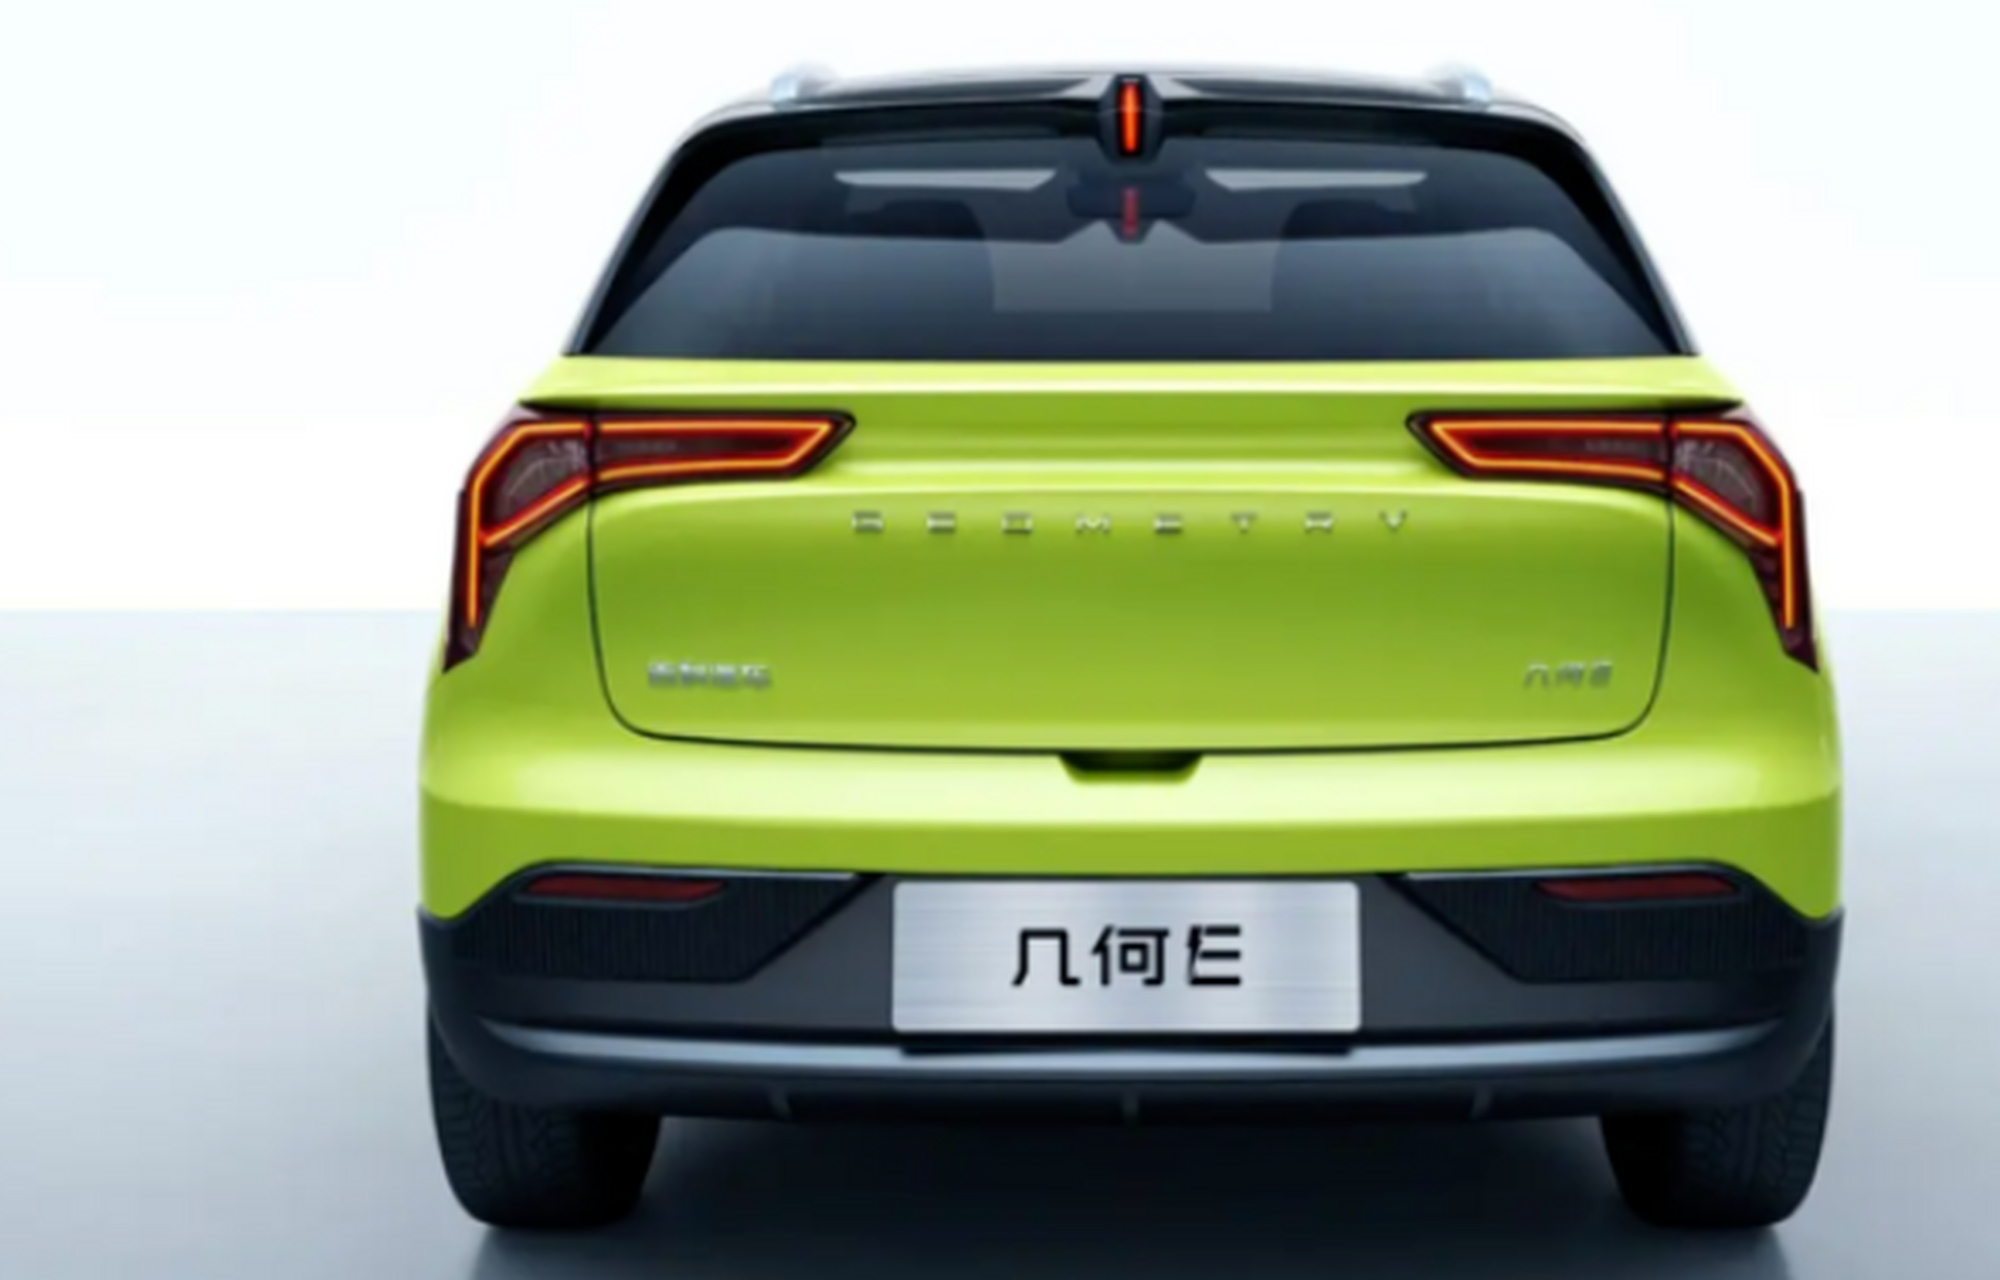 近期,吉利汽车旗下纯电动品牌几何汽车确认将推出全新的纯电动a0级suv